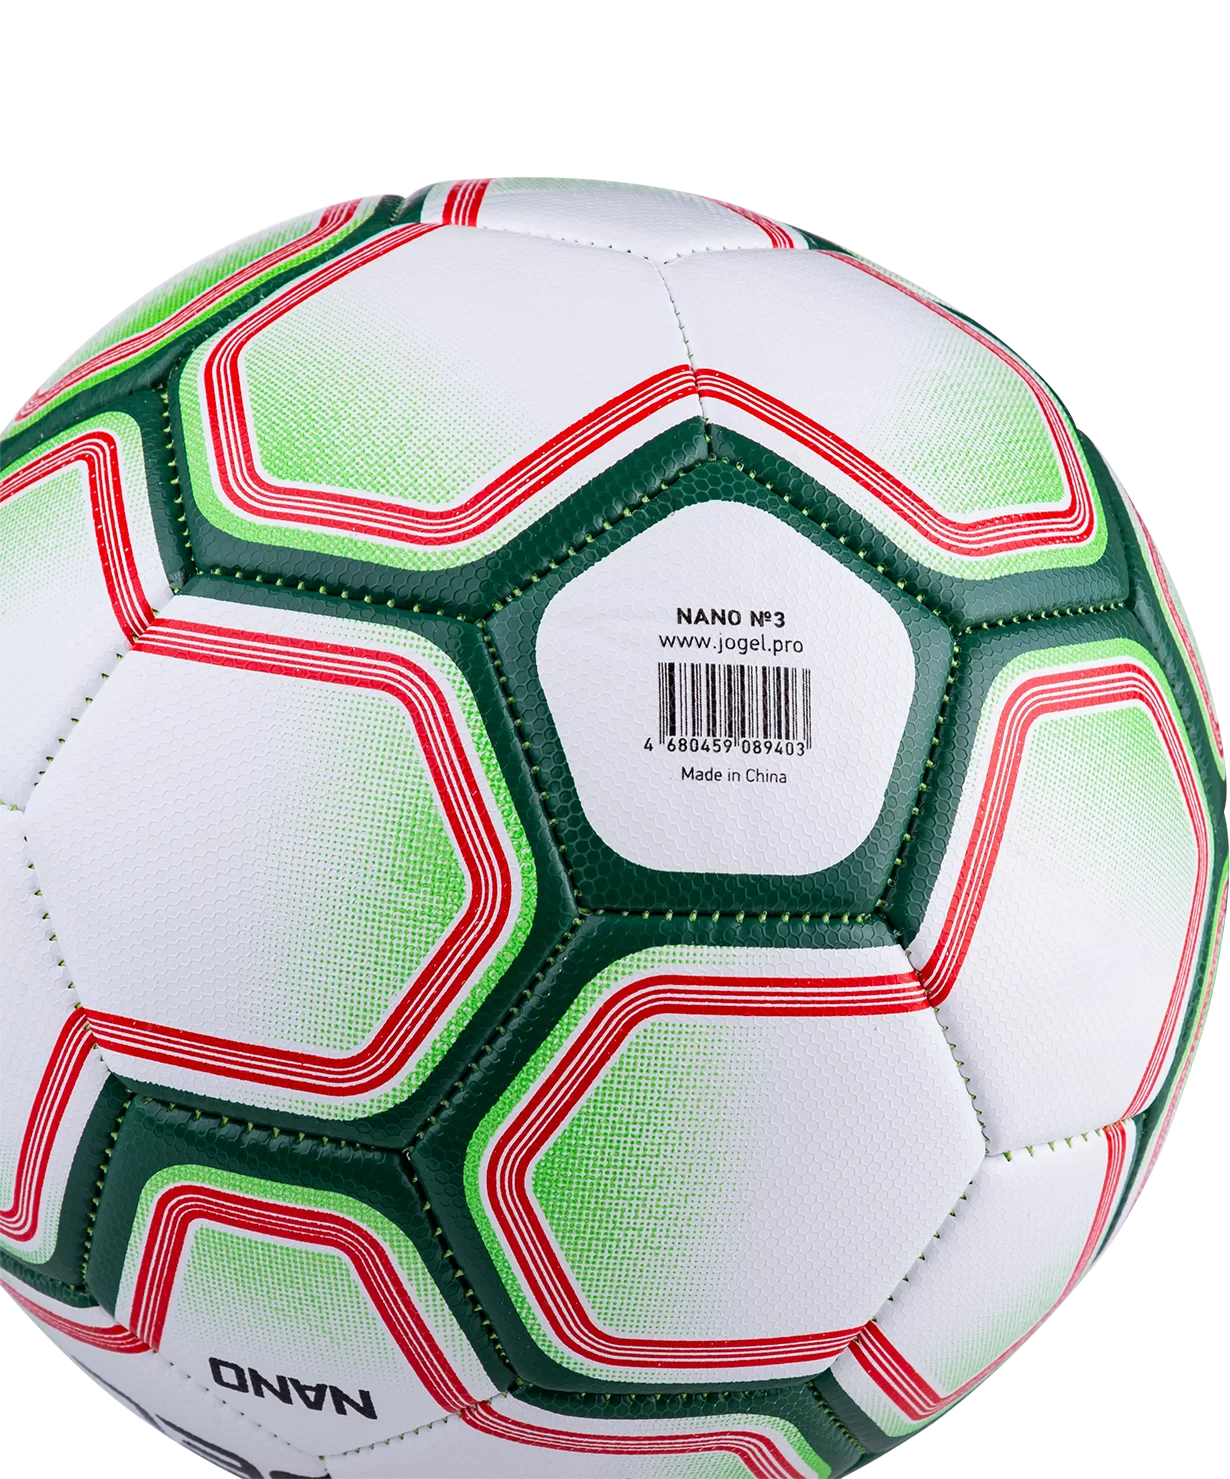 Реальное фото Мяч футбольный Jögel Nano №3 (BC20) УТ-00016945 от магазина СпортСЕ